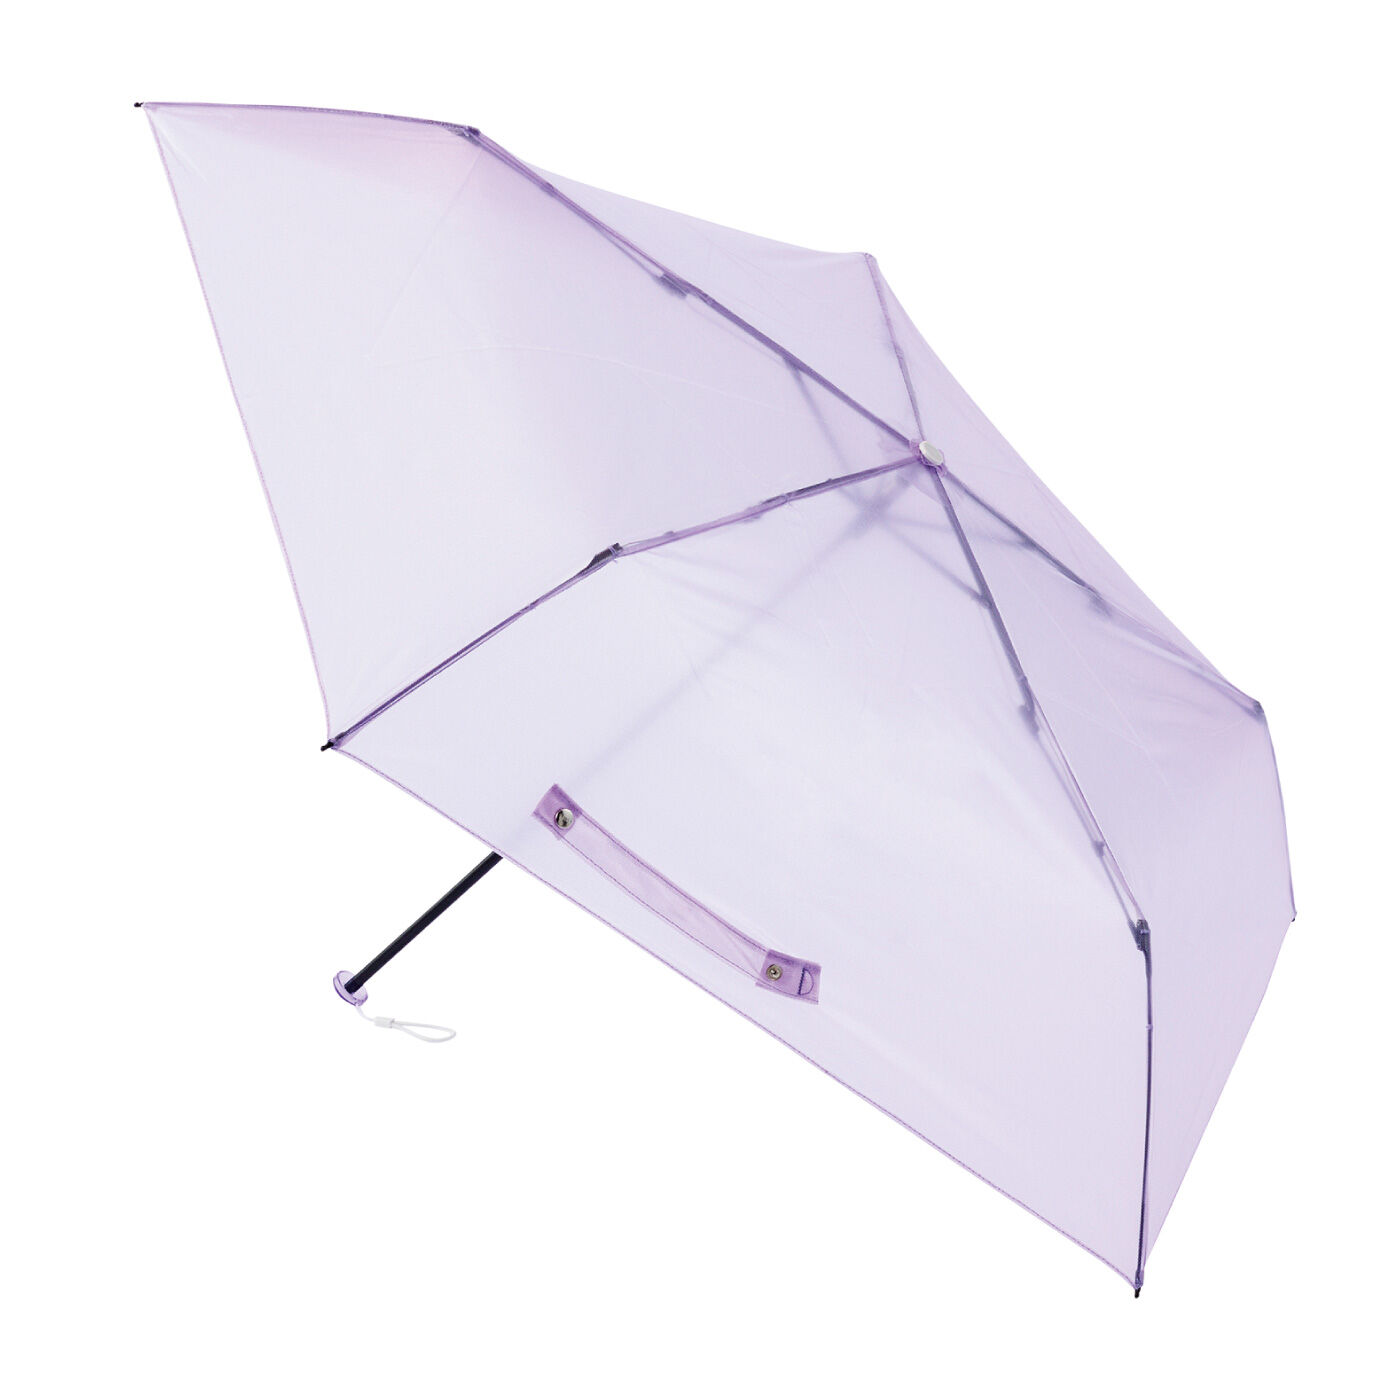 FELISSIMO PARTNERS | ネオンカラーの透け感が おしゃれな 軽量 折りたたみ傘